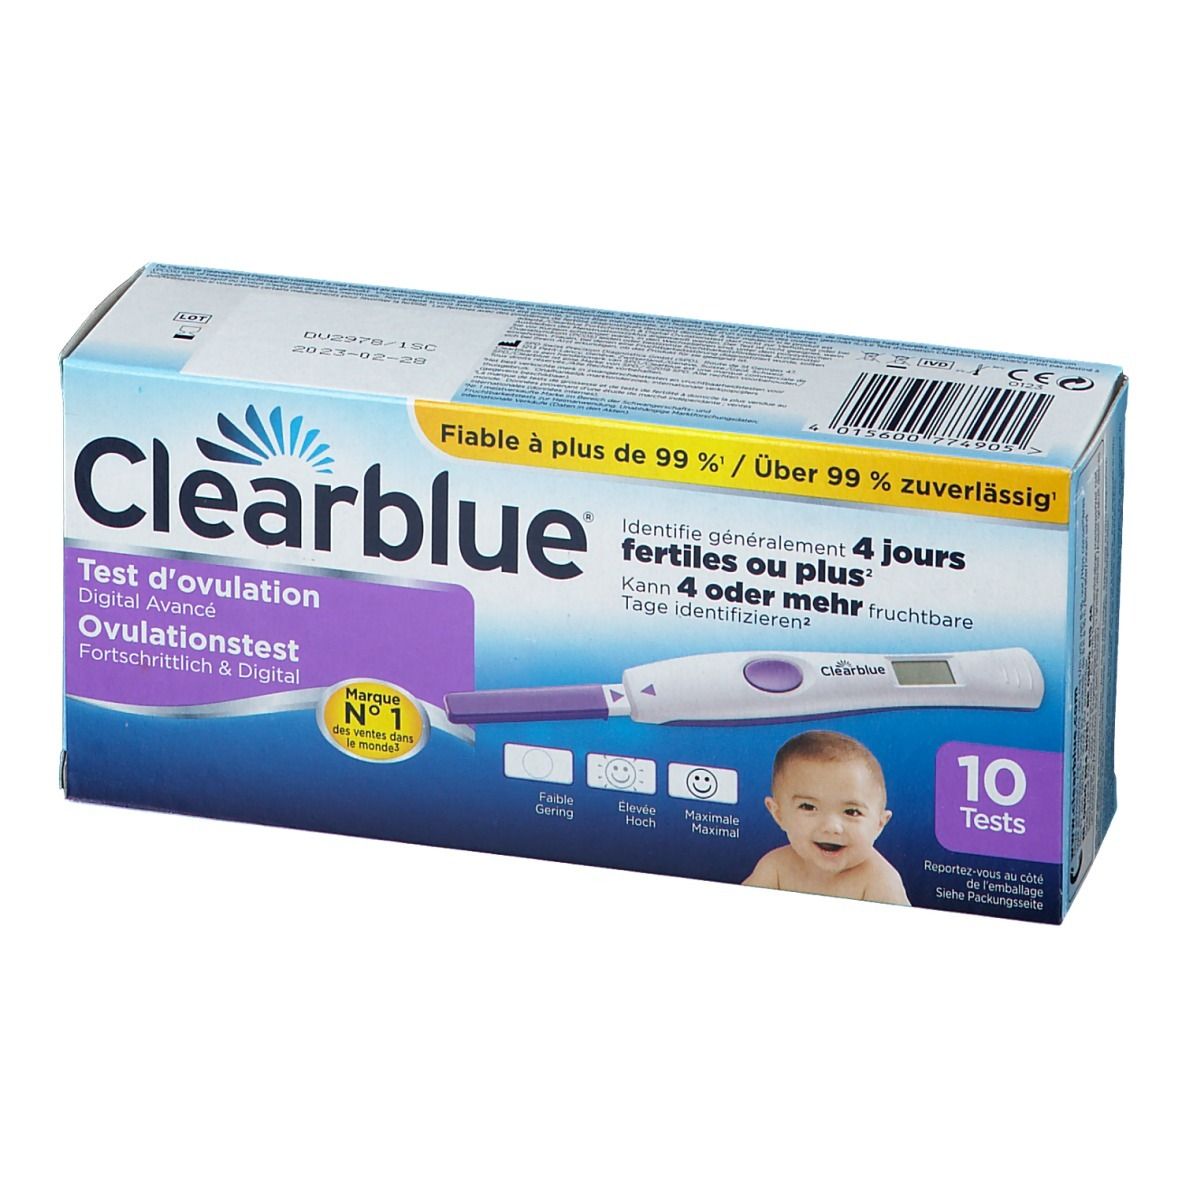 Clearblue® Test di Ovulazione Digitale Avanzato